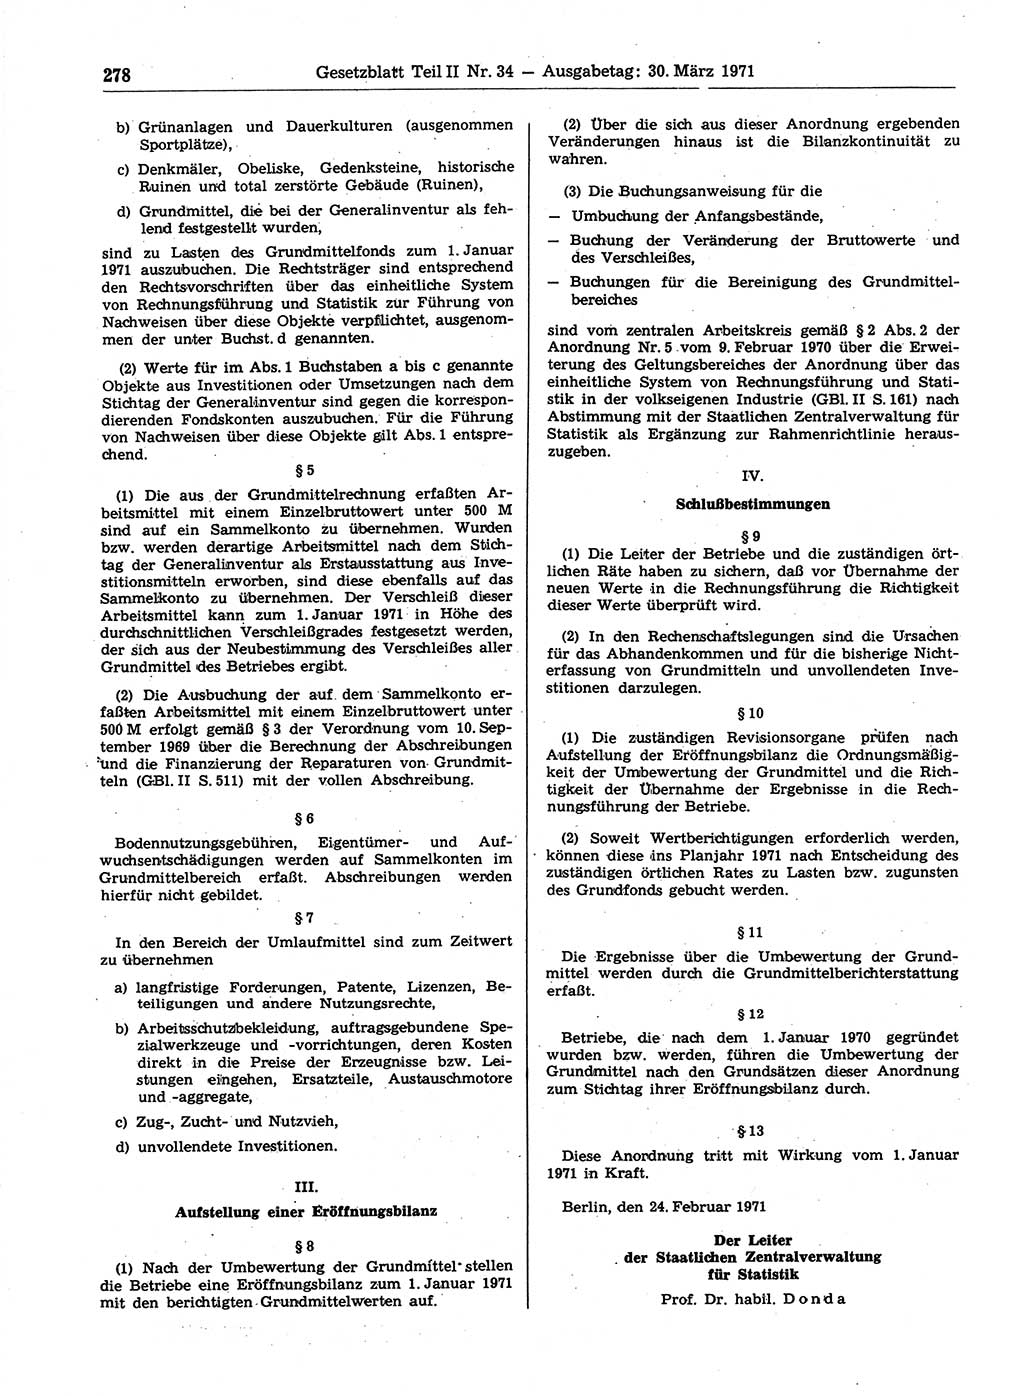 Gesetzblatt (GBl.) der Deutschen Demokratischen Republik (DDR) Teil ⅠⅠ 1971, Seite 278 (GBl. DDR ⅠⅠ 1971, S. 278)